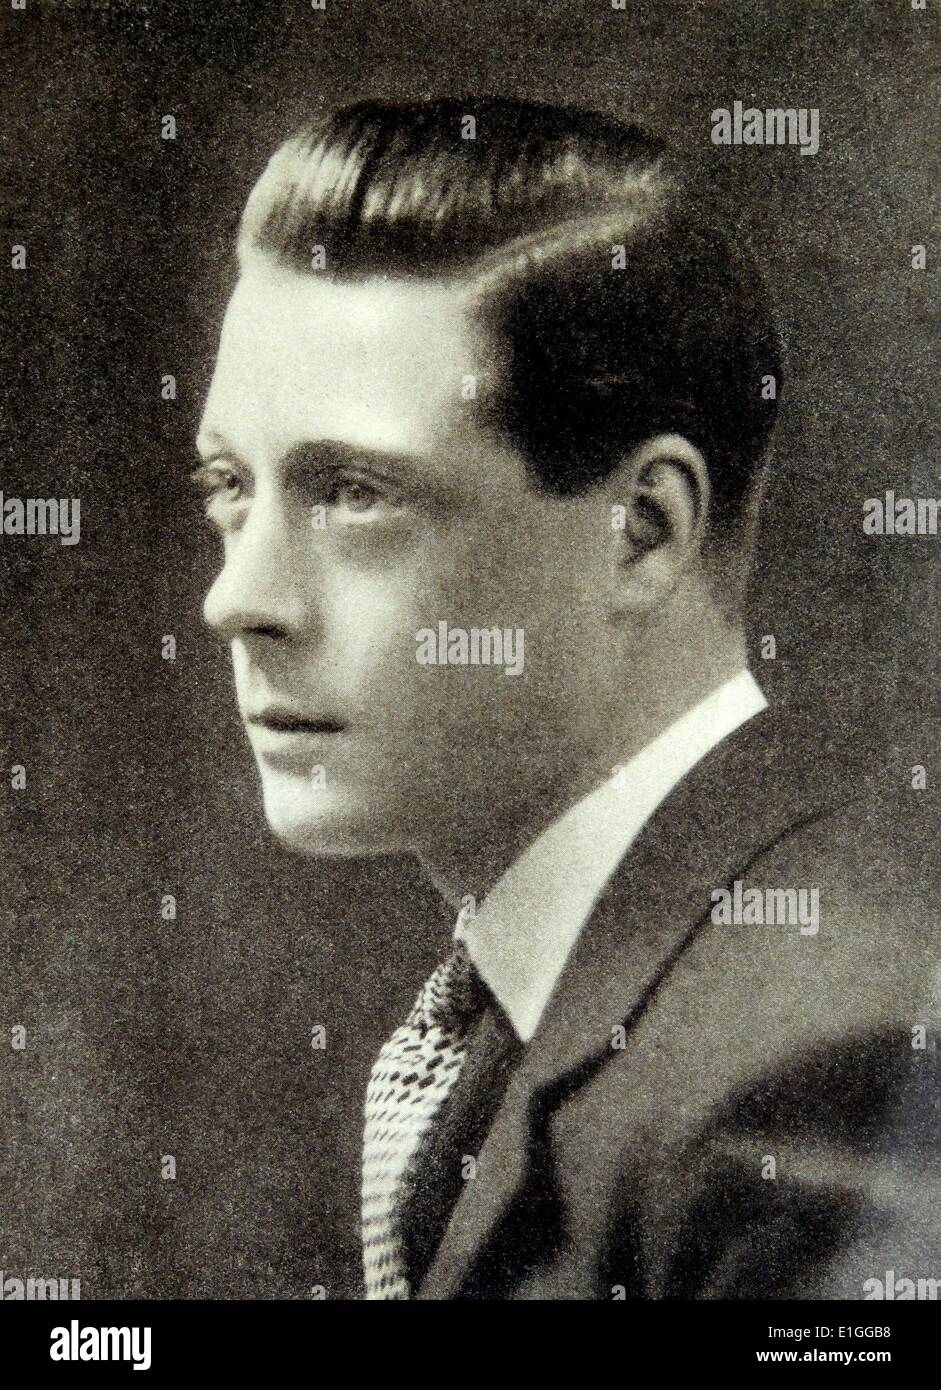 Kamera-Portrait über seine königliche Hoheit der Prinz Edward VII. von Wales (1894-1972). Datiert 1928 Stockfoto